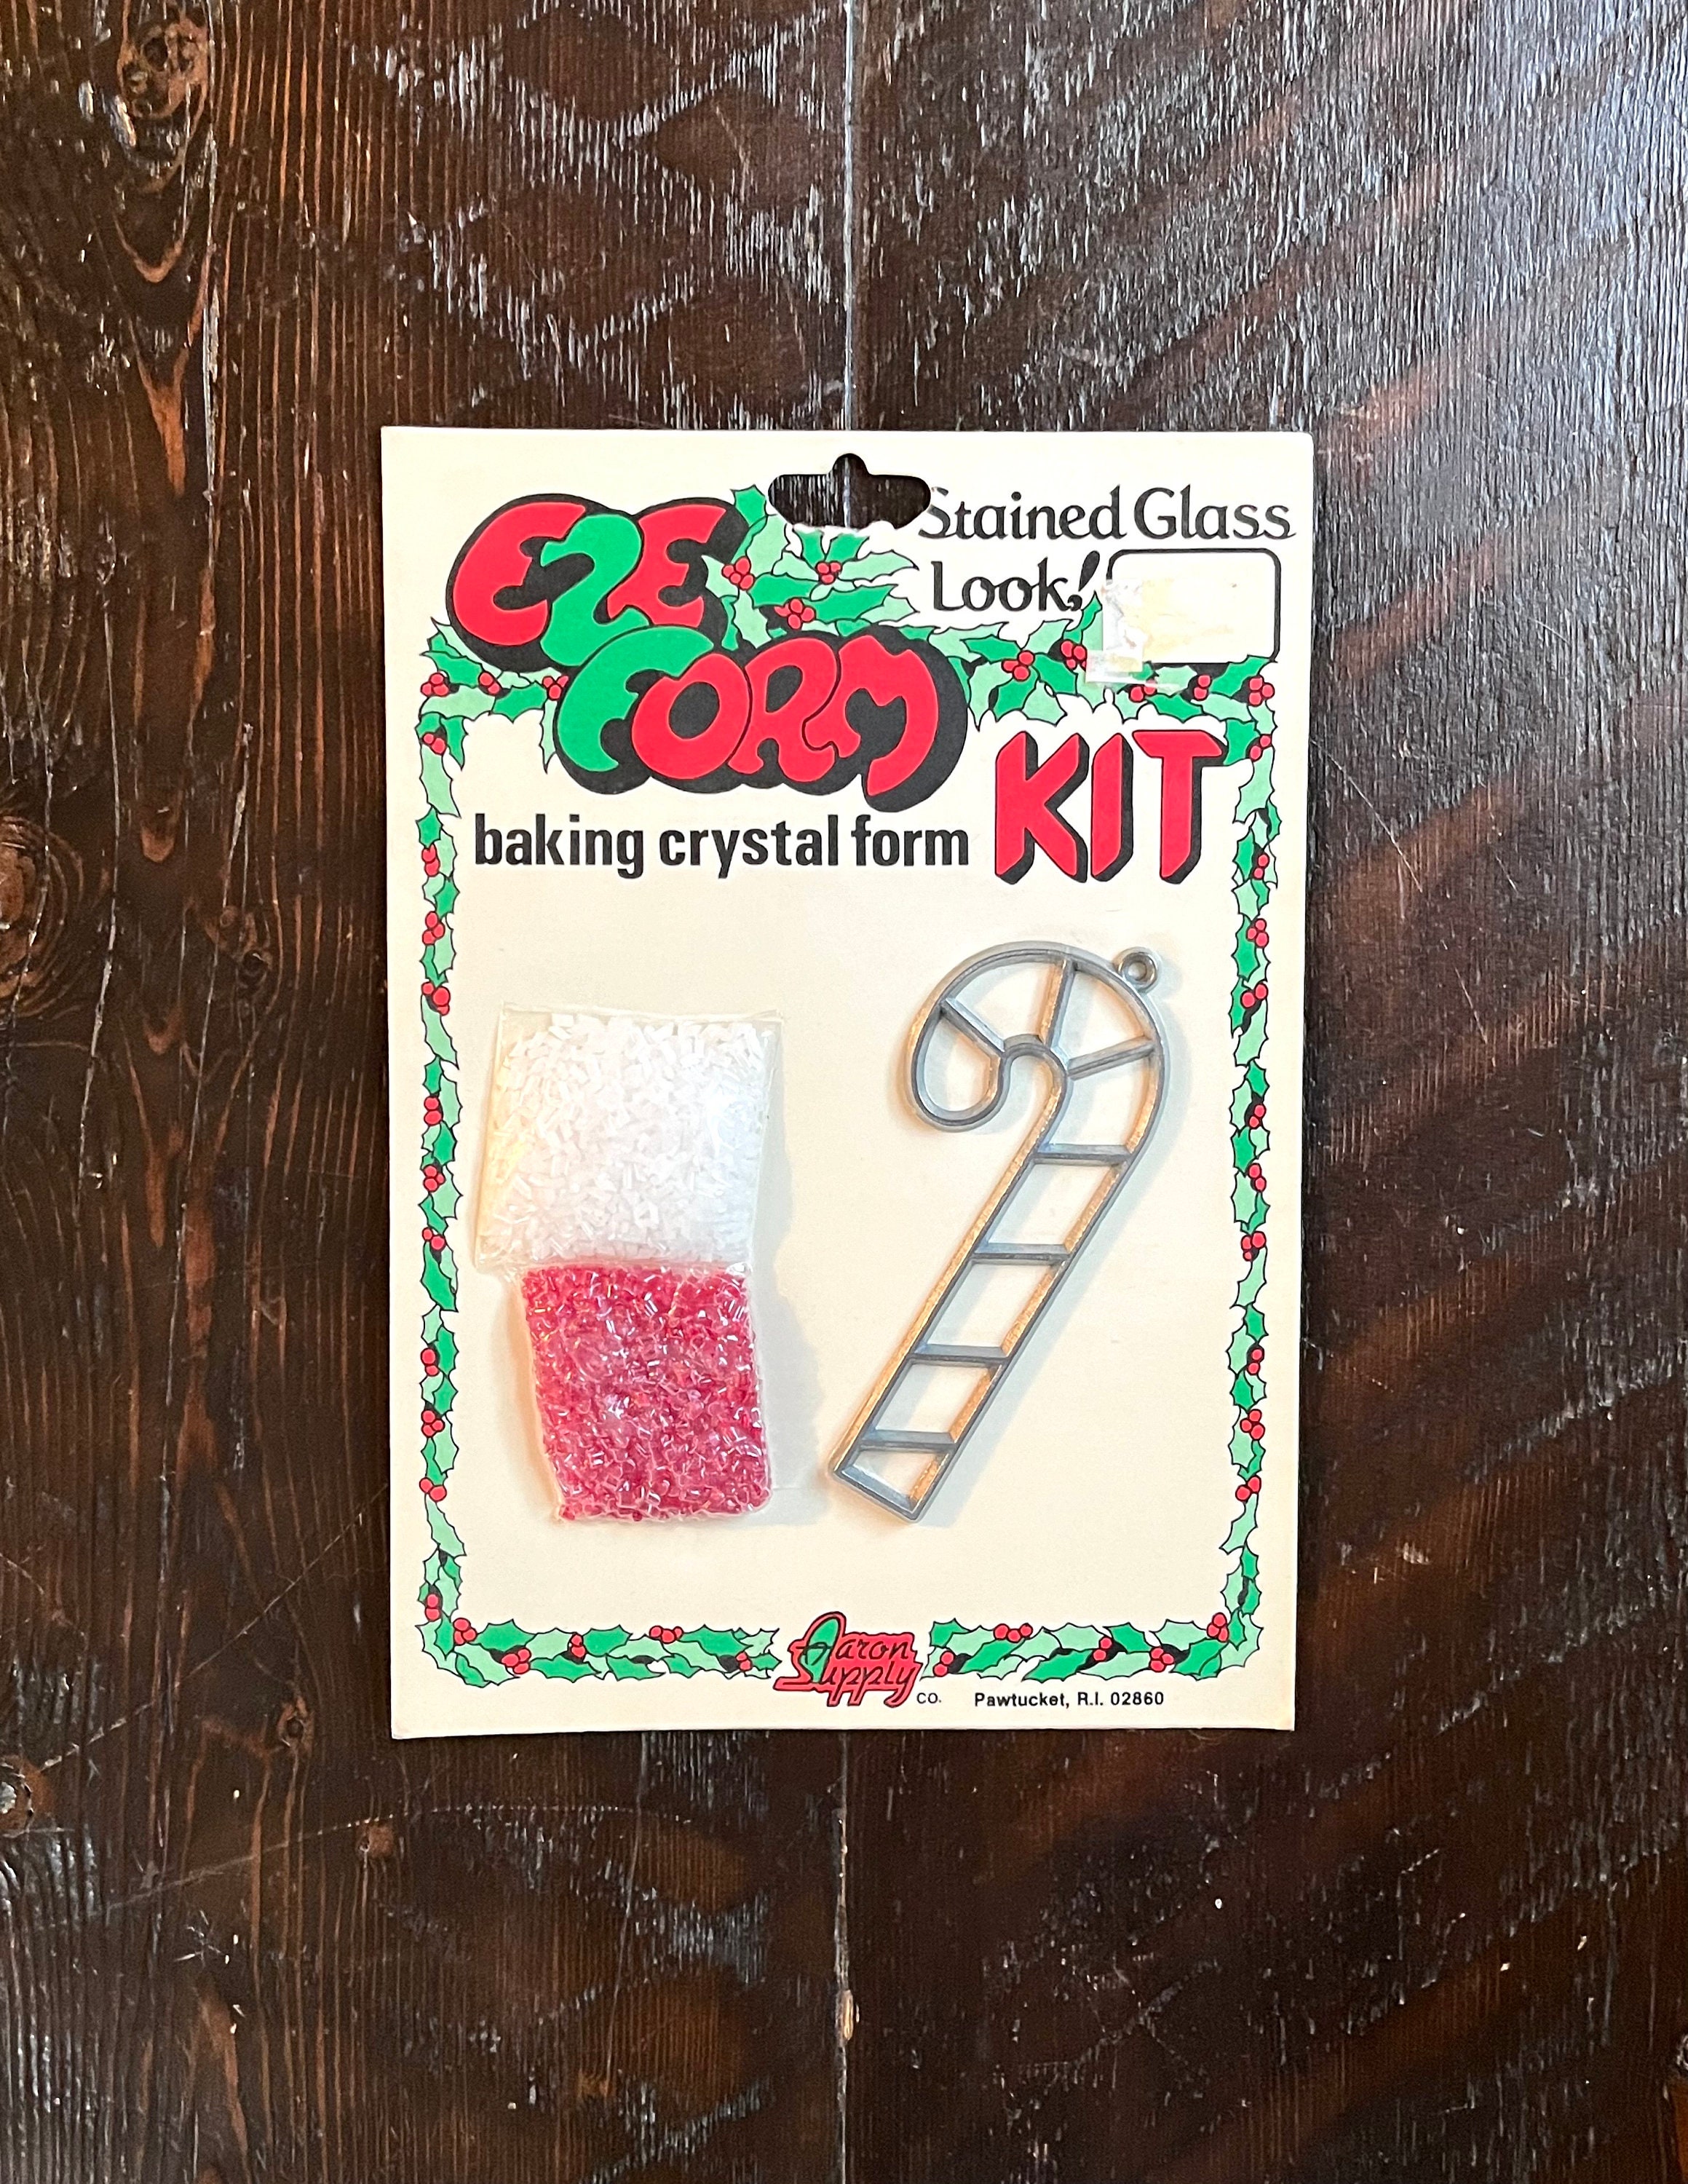 Vintage Baking Beads Shape & Bake Beading Craft Kit 1970's Coast Bead 